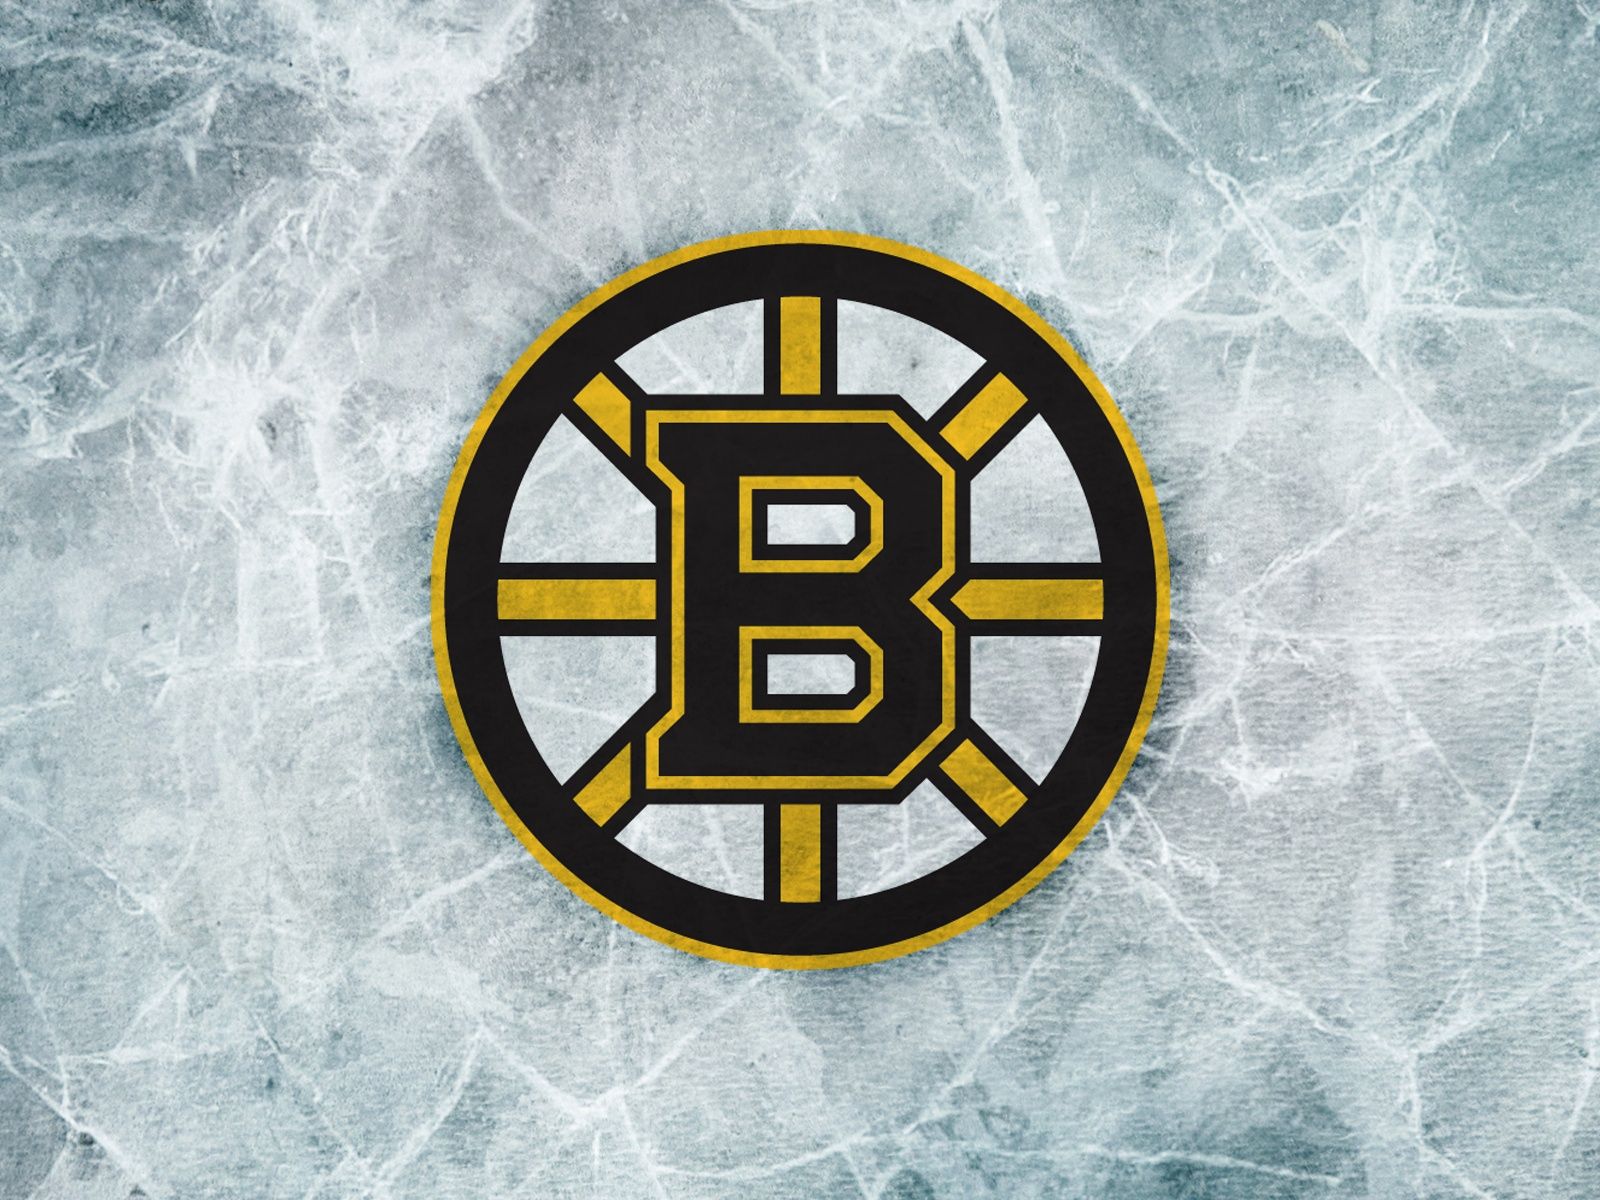 Boston Bruins Wallpaper 1600x1200 ID25615